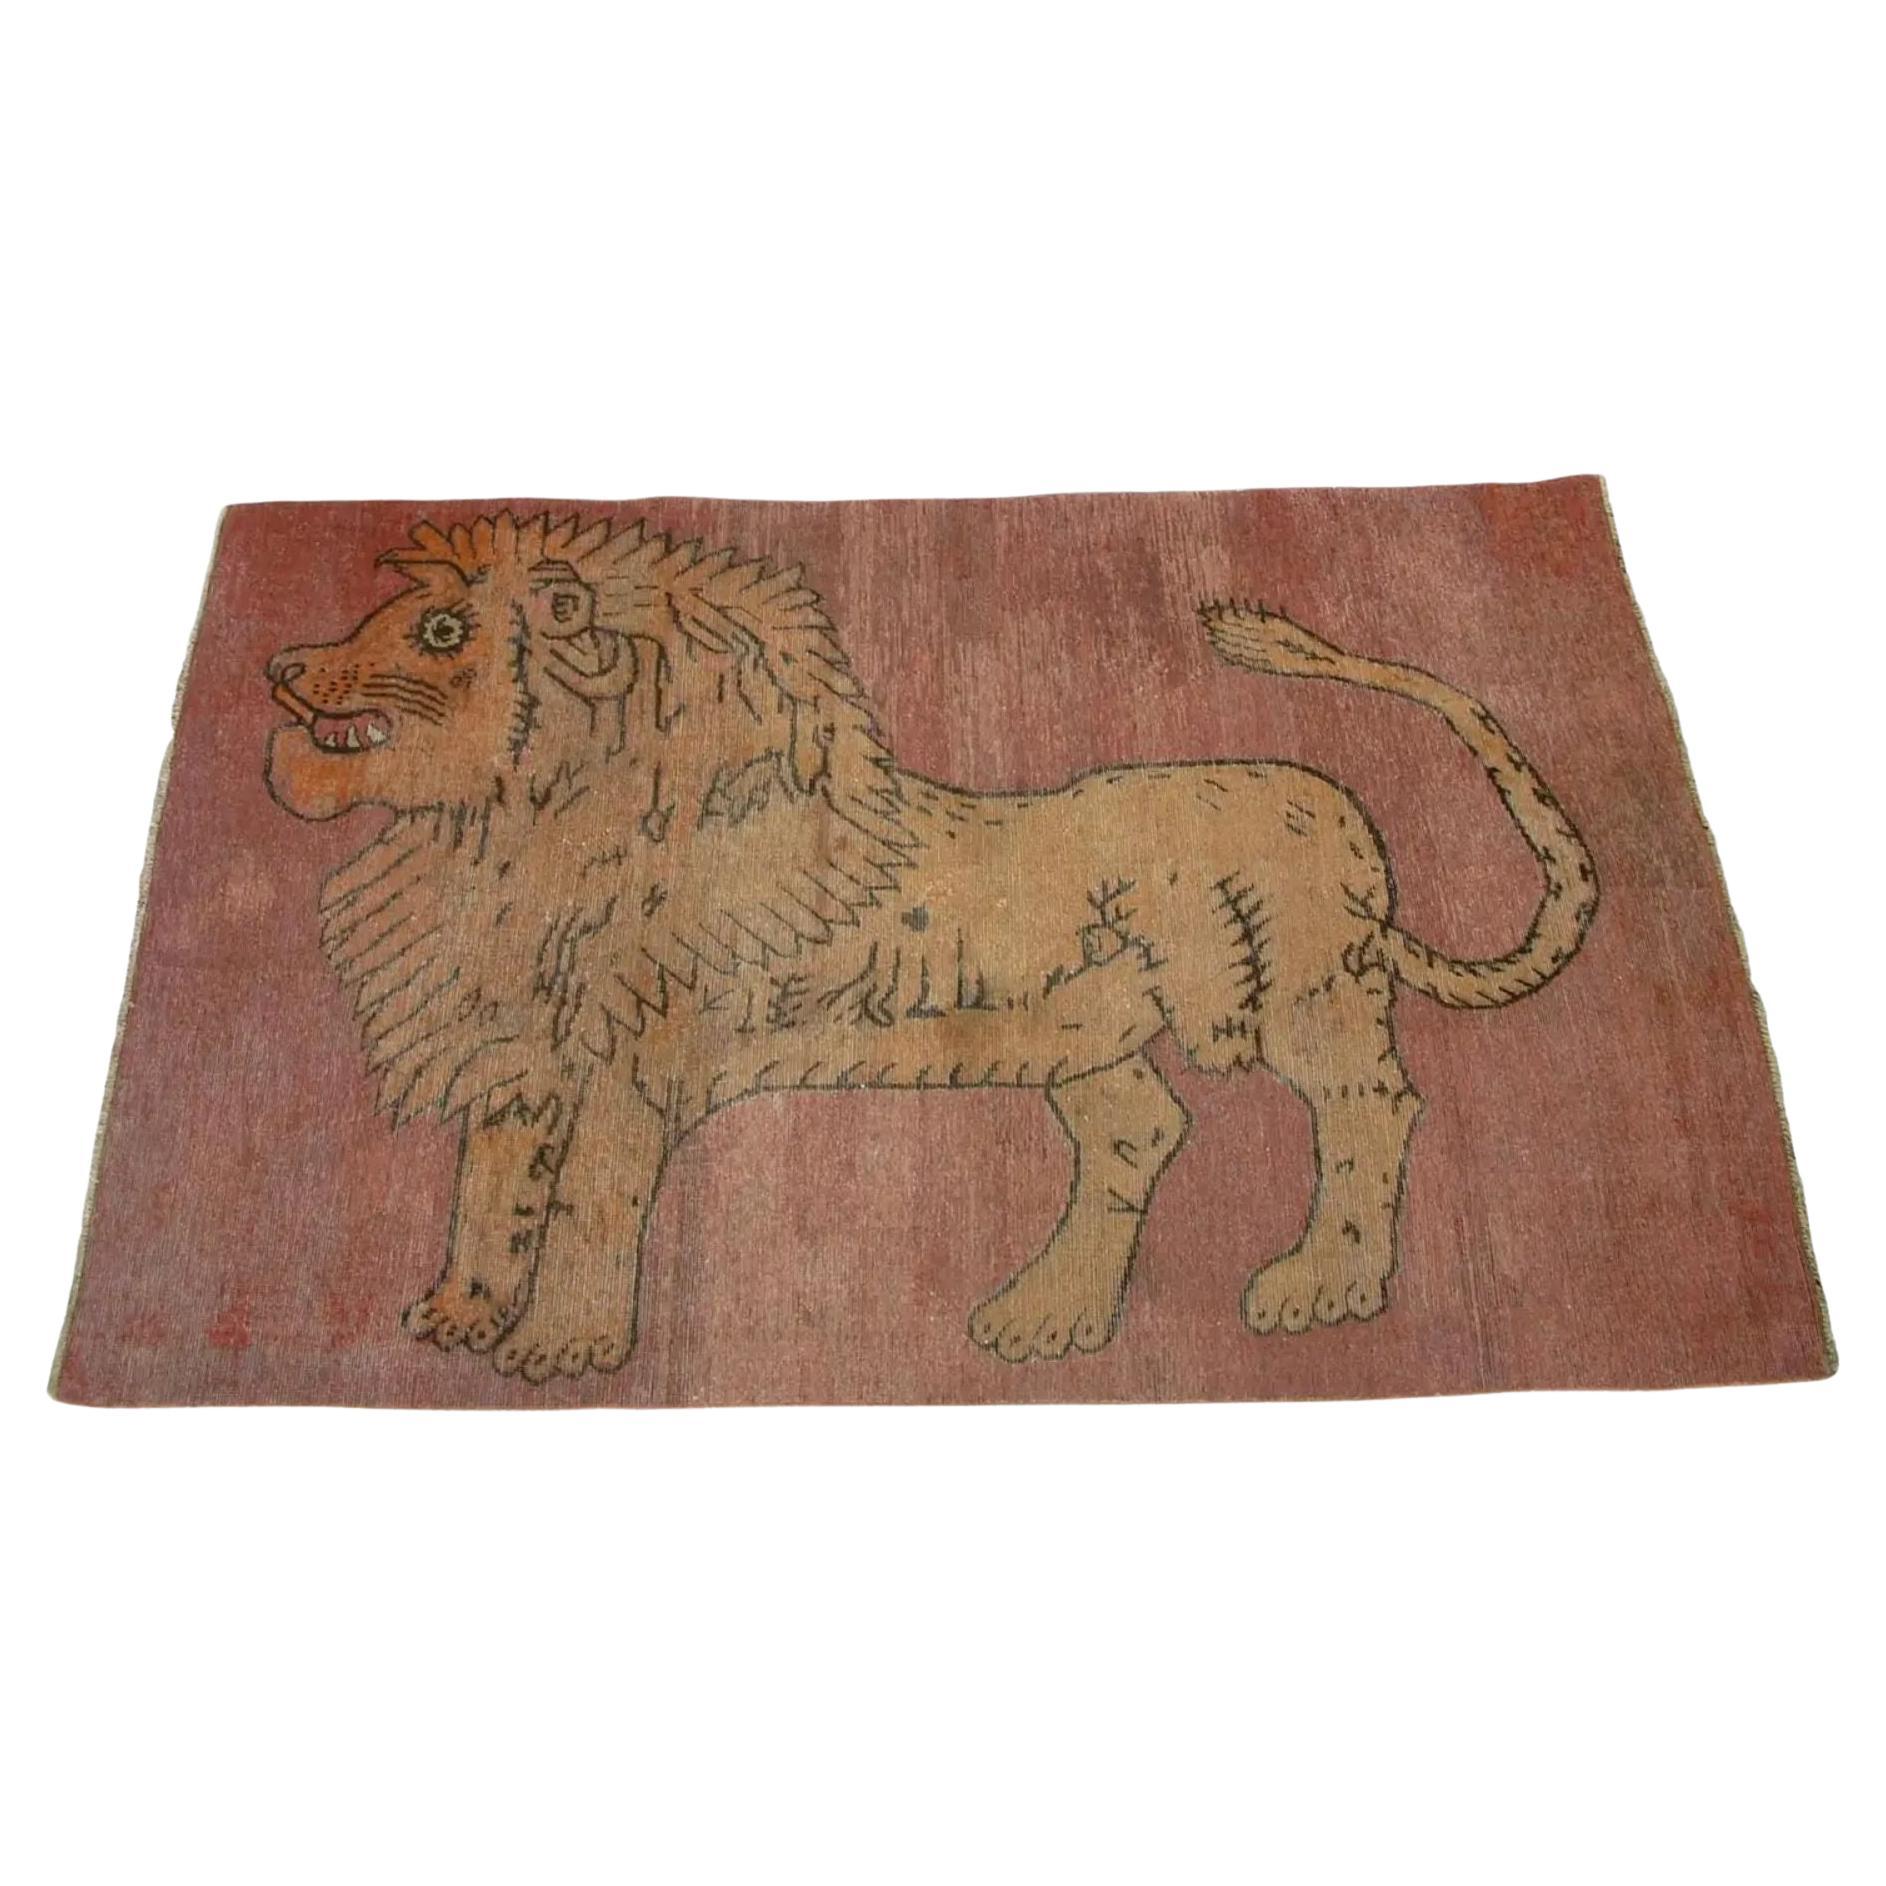 Antiker Samarkand-Teppich im Löwendesign - 6'6'' X 4'4''